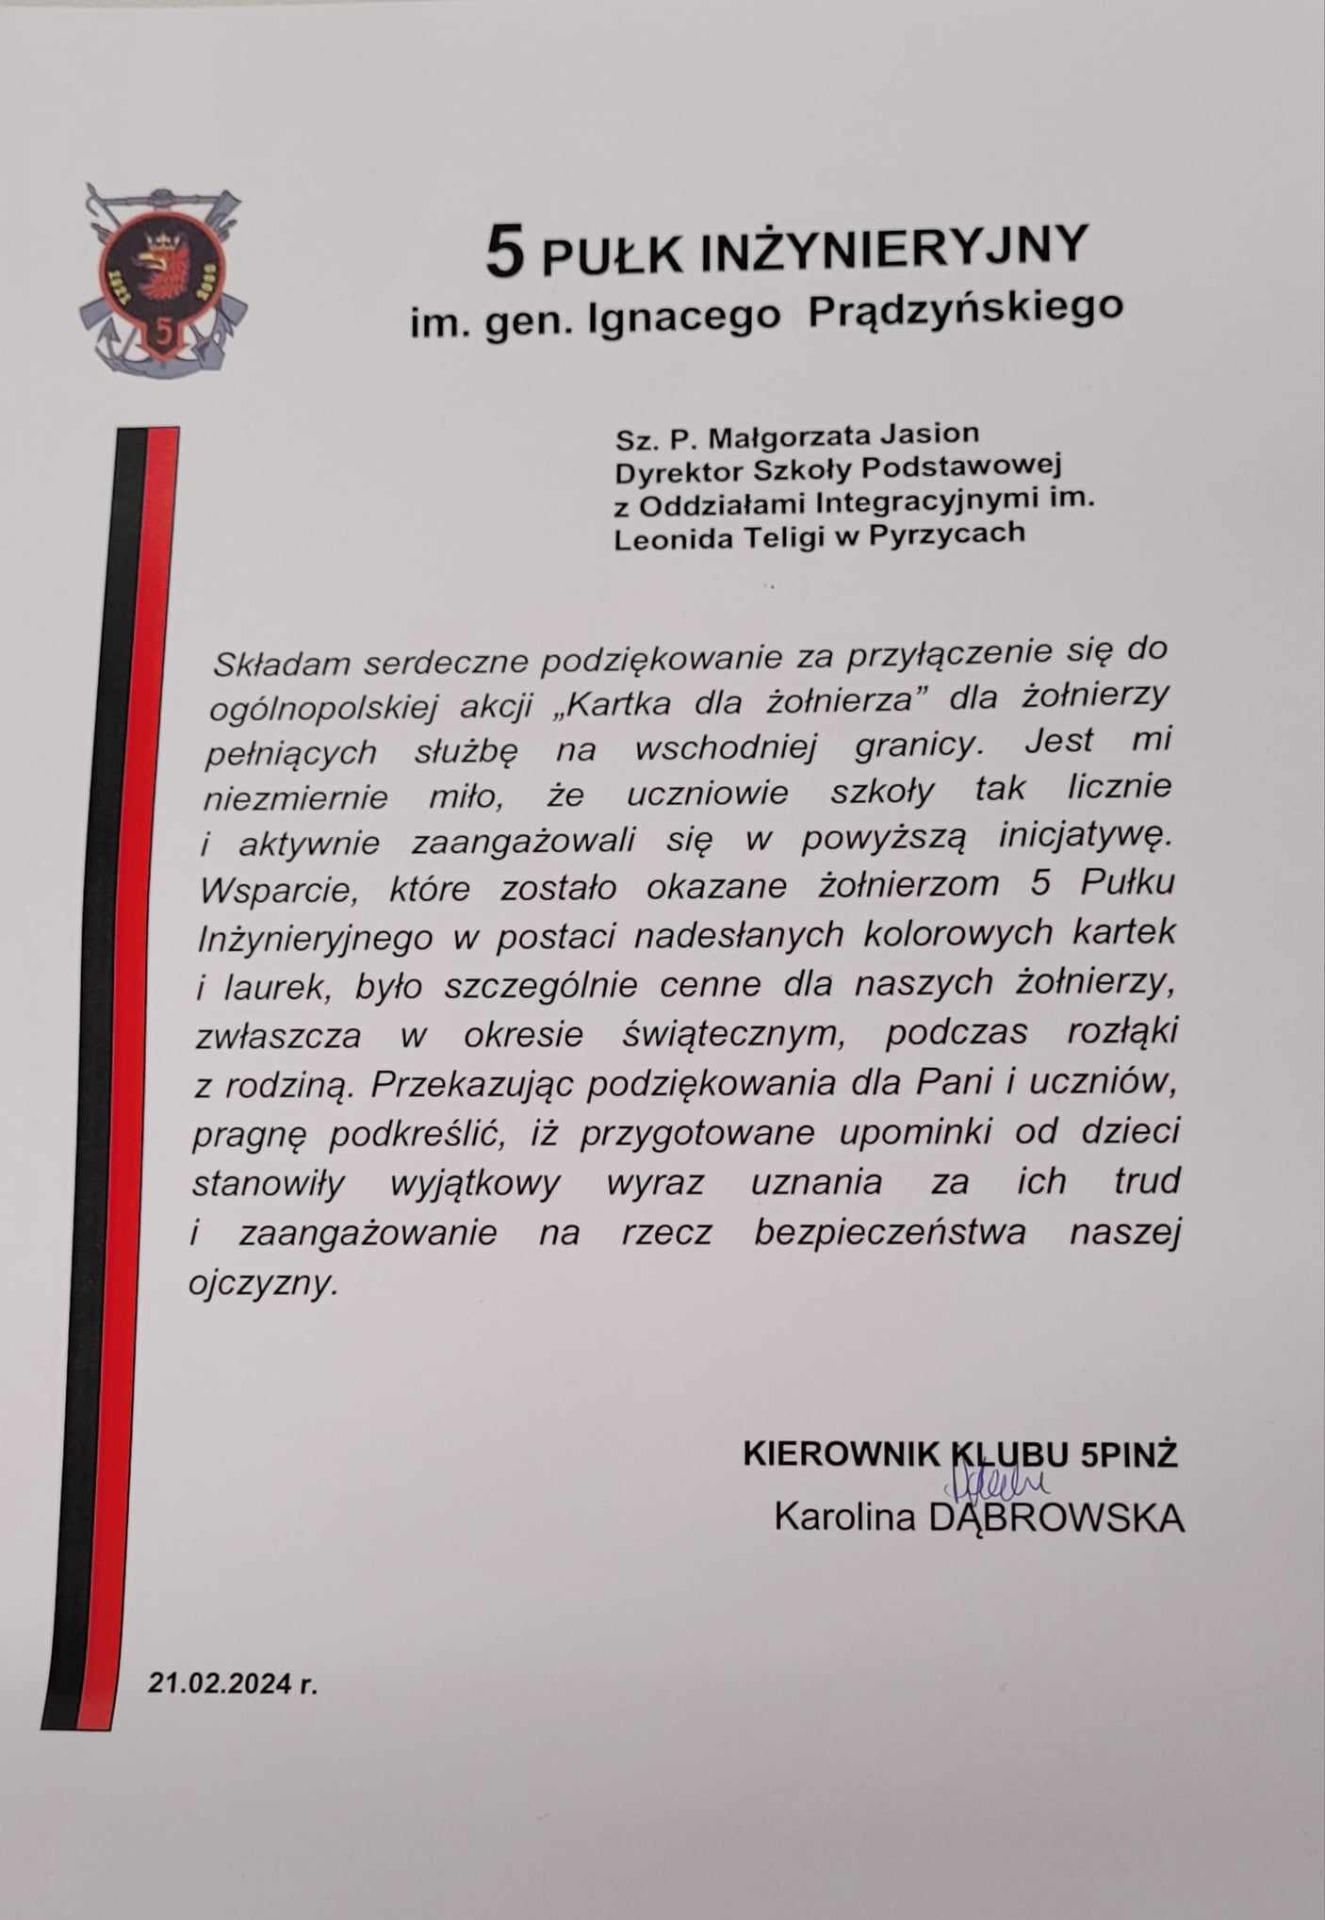 Podziękowania dla uczniów SPzOI w Pyrzycach za udział w akcji "Kartka dla żołnierza".